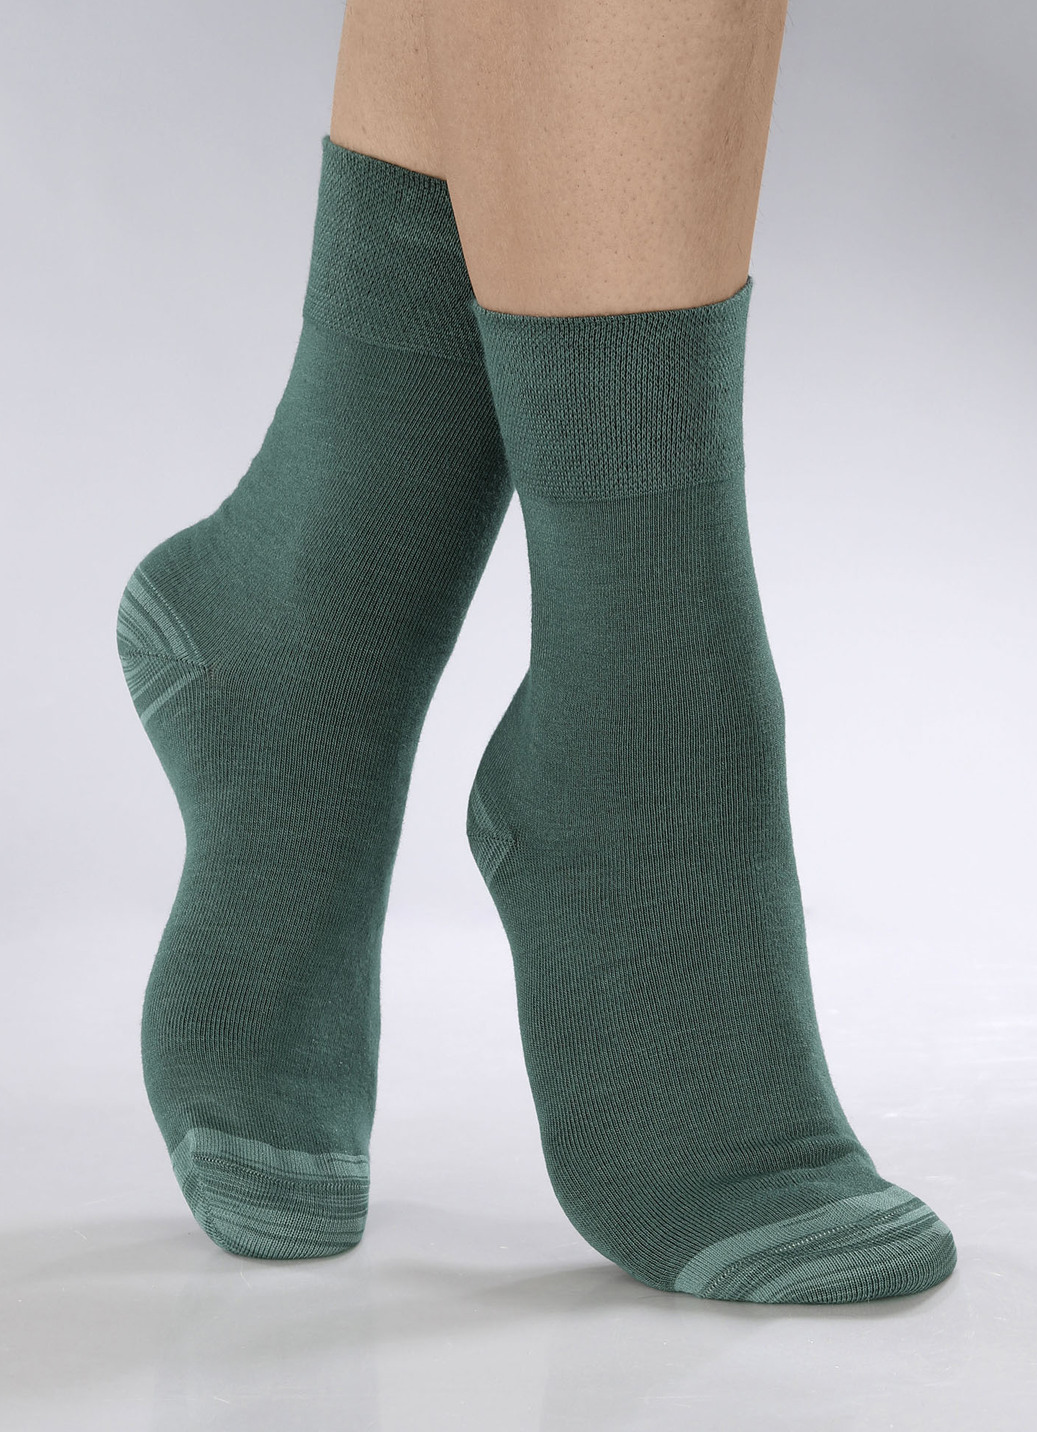 Sechserpack Socken in verschiedenen Farbstellungen, Größe 3 (Schuhgr. 43-46), 2X Grün, 2X Petrol, 2X Beere von BADER